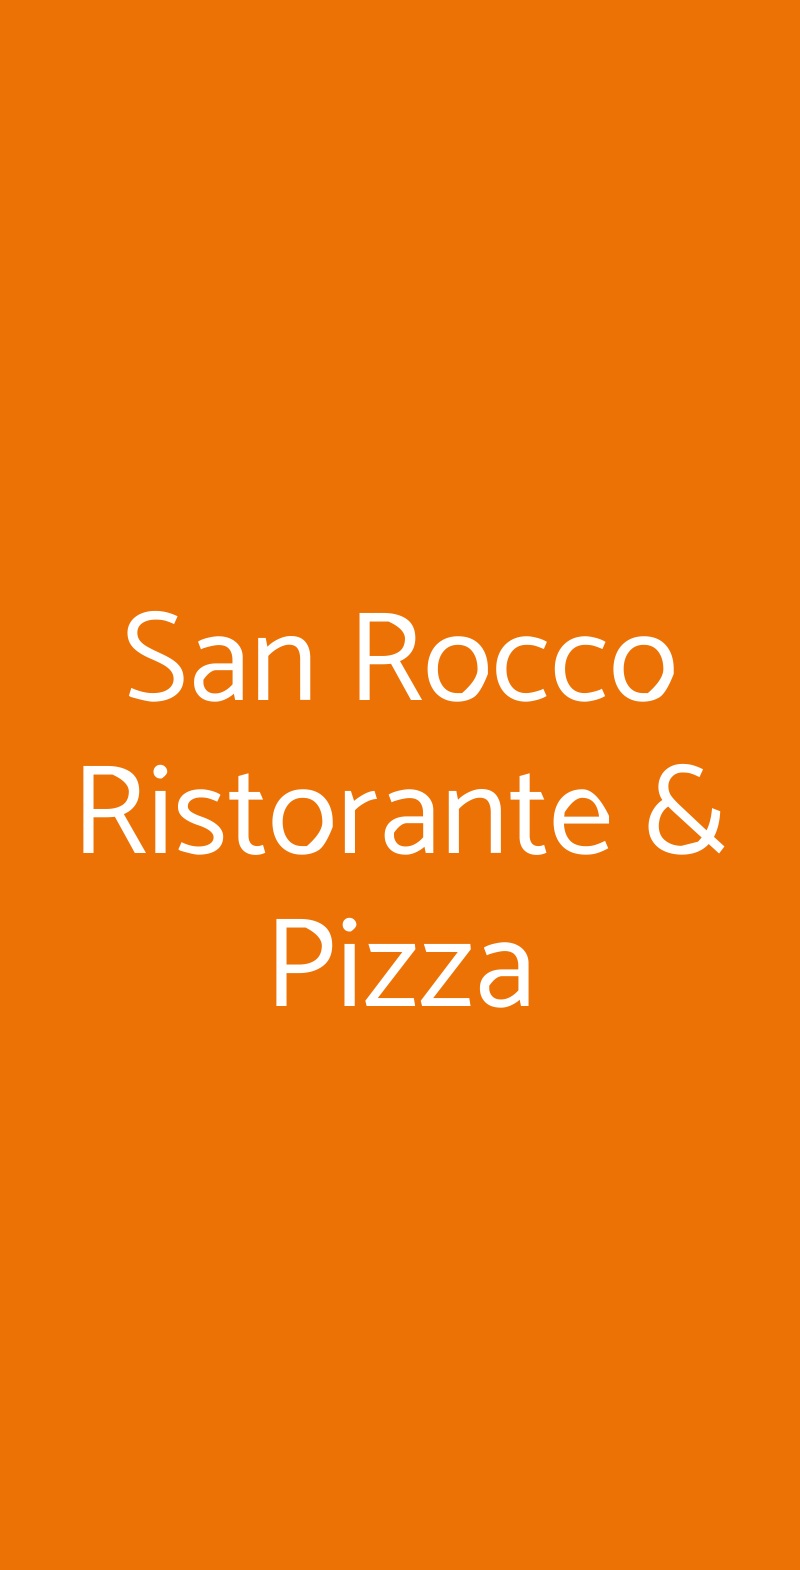 San Rocco Ristorante & Pizza Peio menù 1 pagina